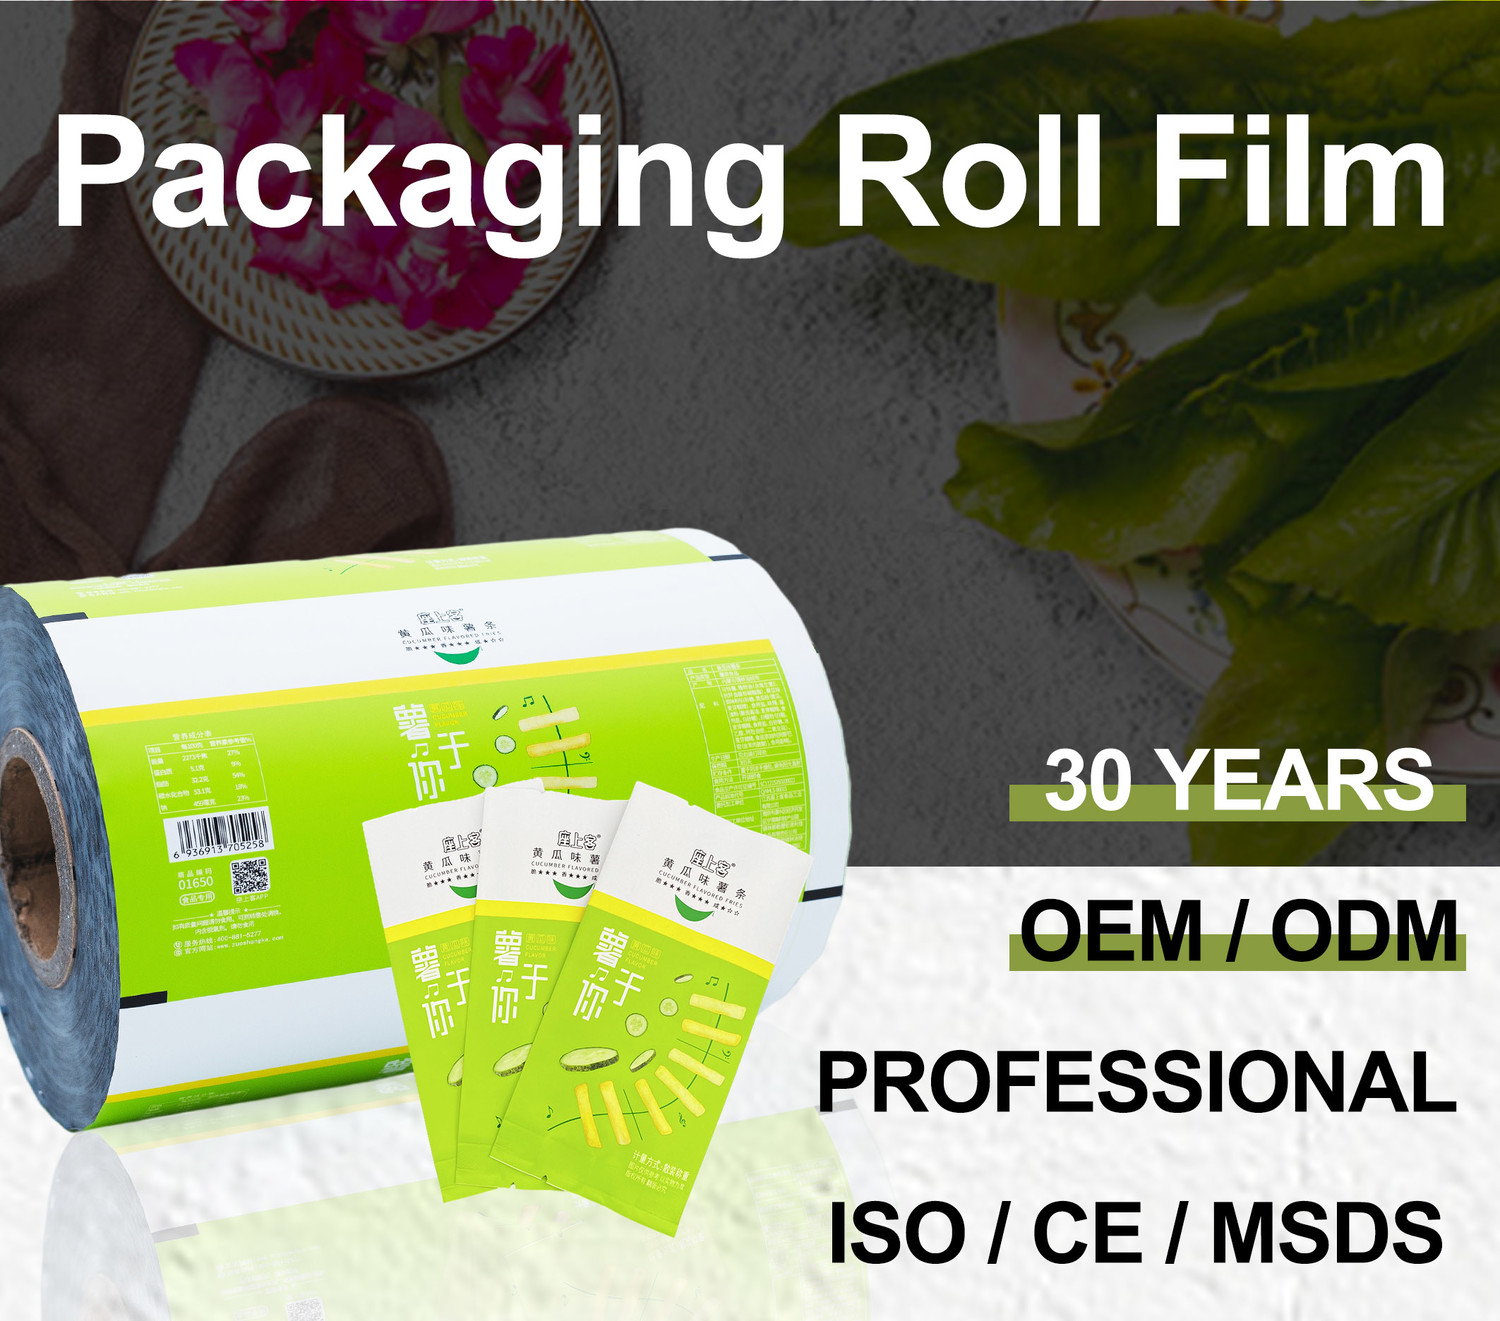 Packaging Roll Film packaging film